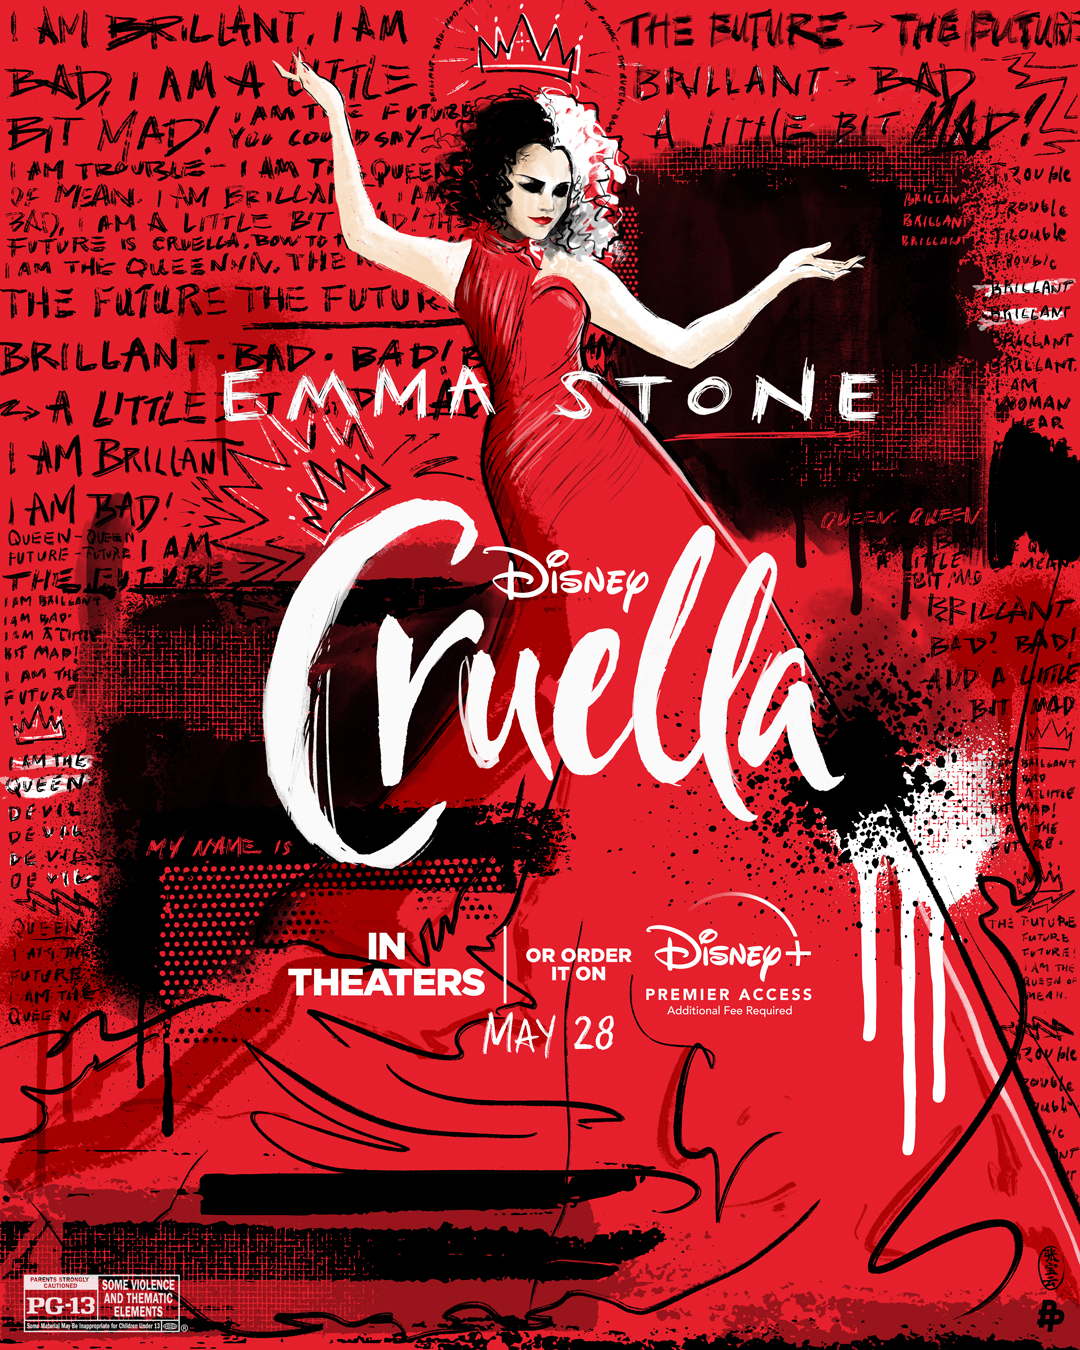 Official Disney - Cruella